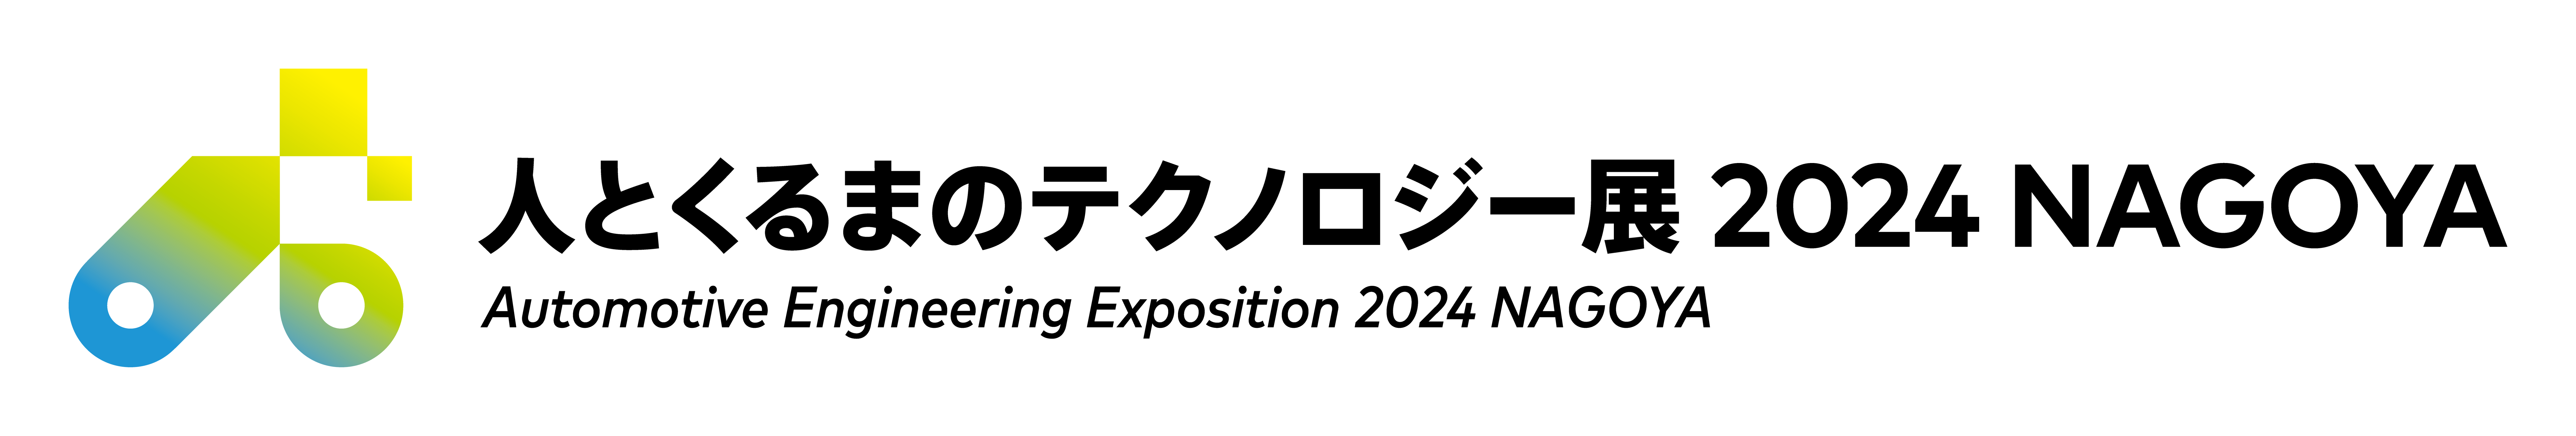 人とくるまのテクノロジー展2023 名古屋